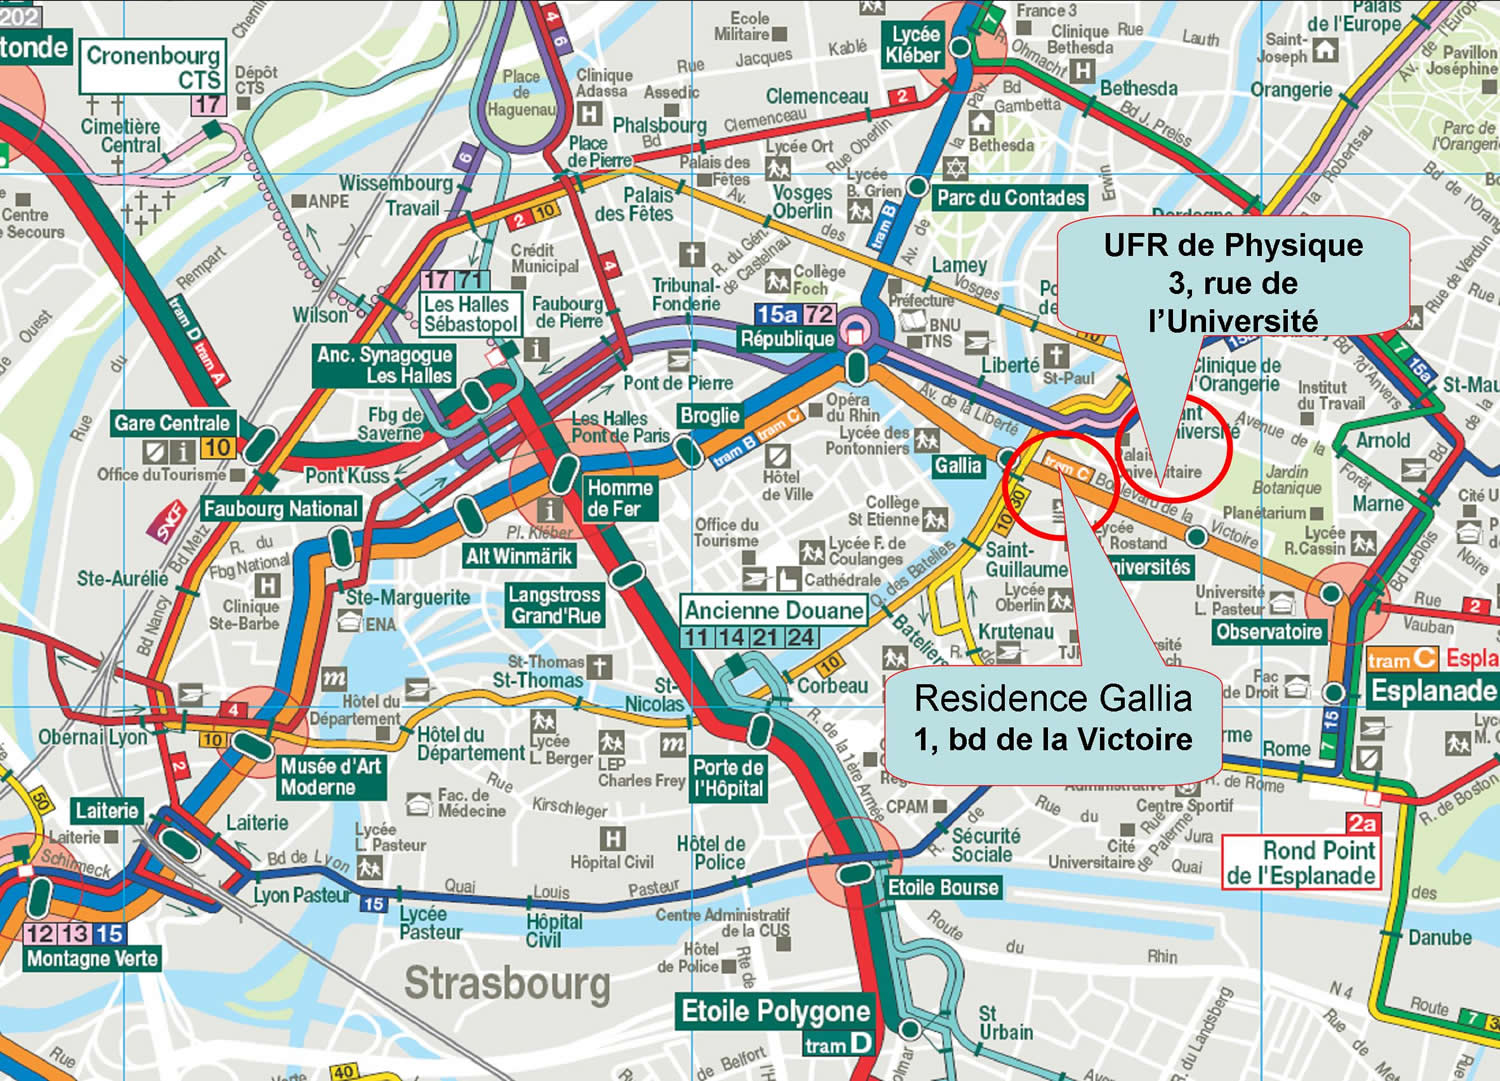 Strasbourg university map